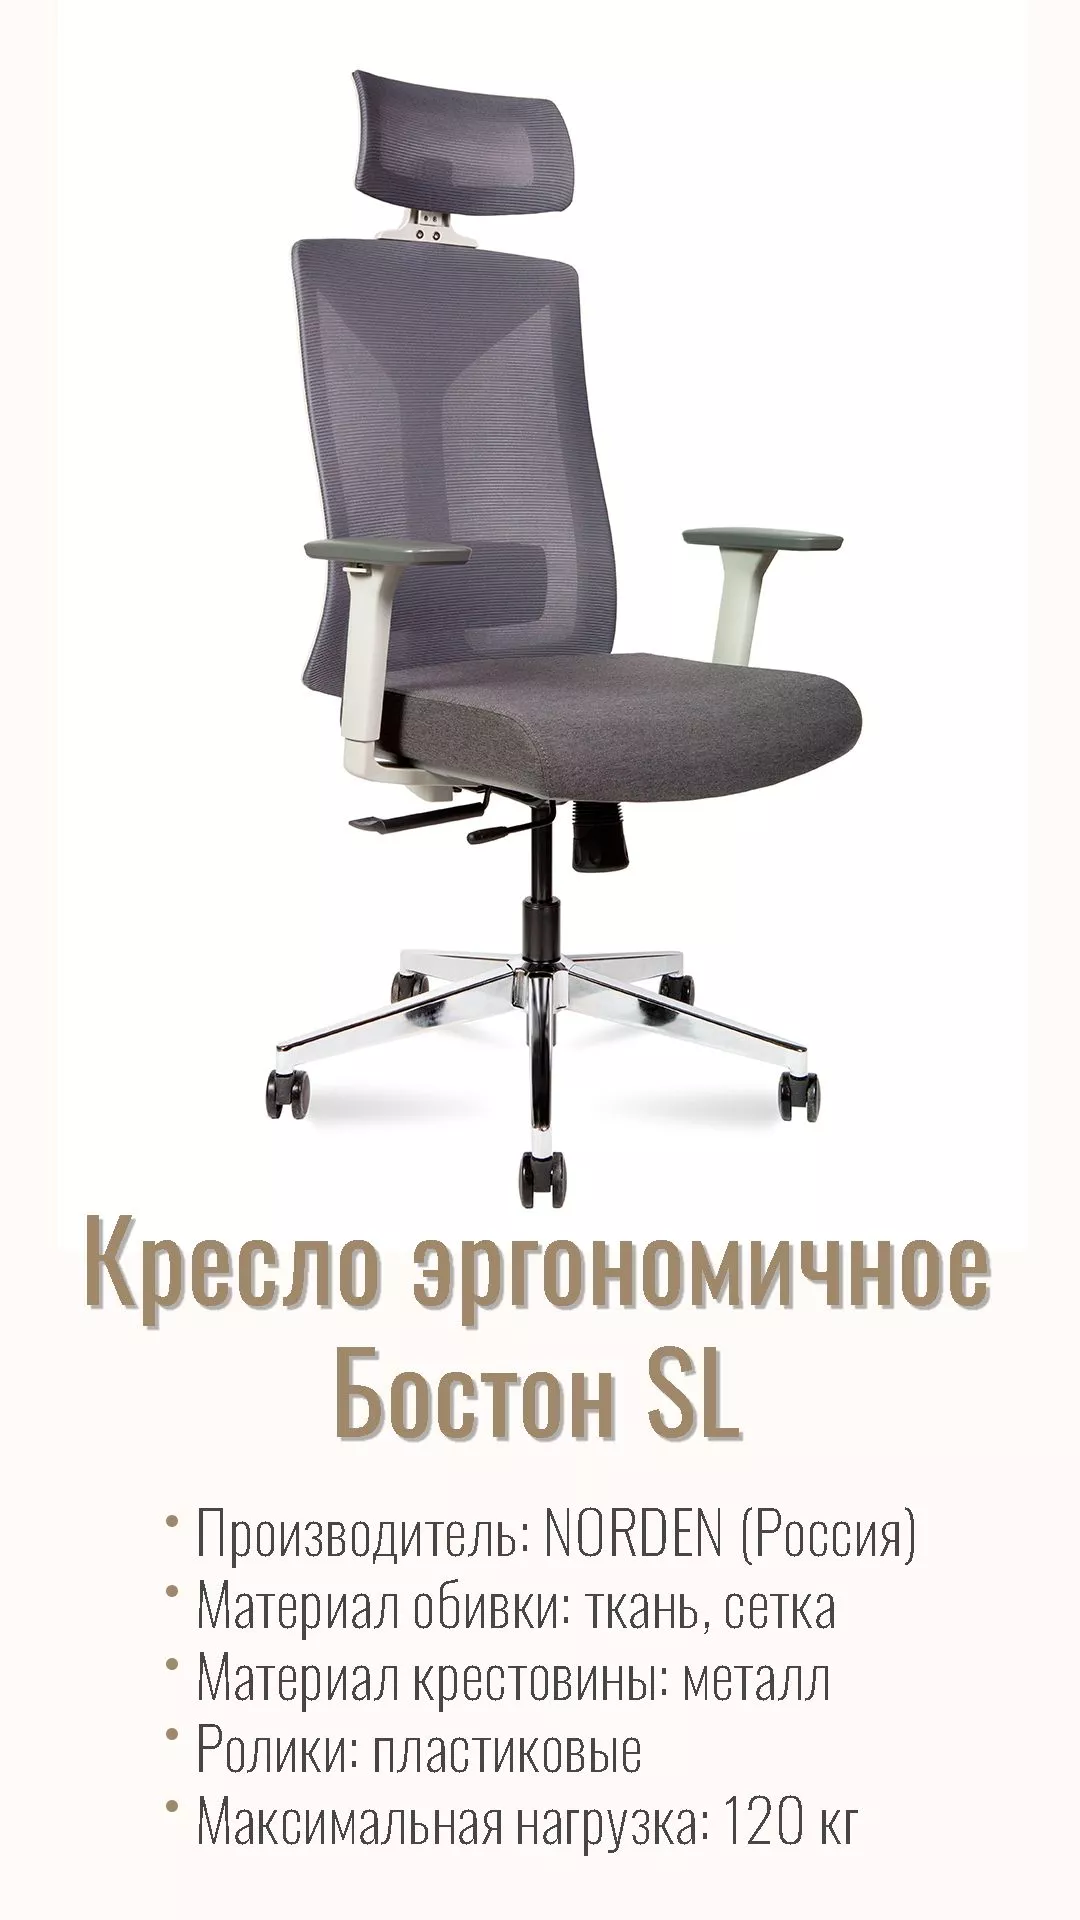 Кресло эргономичное NORDEN Бостон SL серый крестовина хром 8001A-2 grey